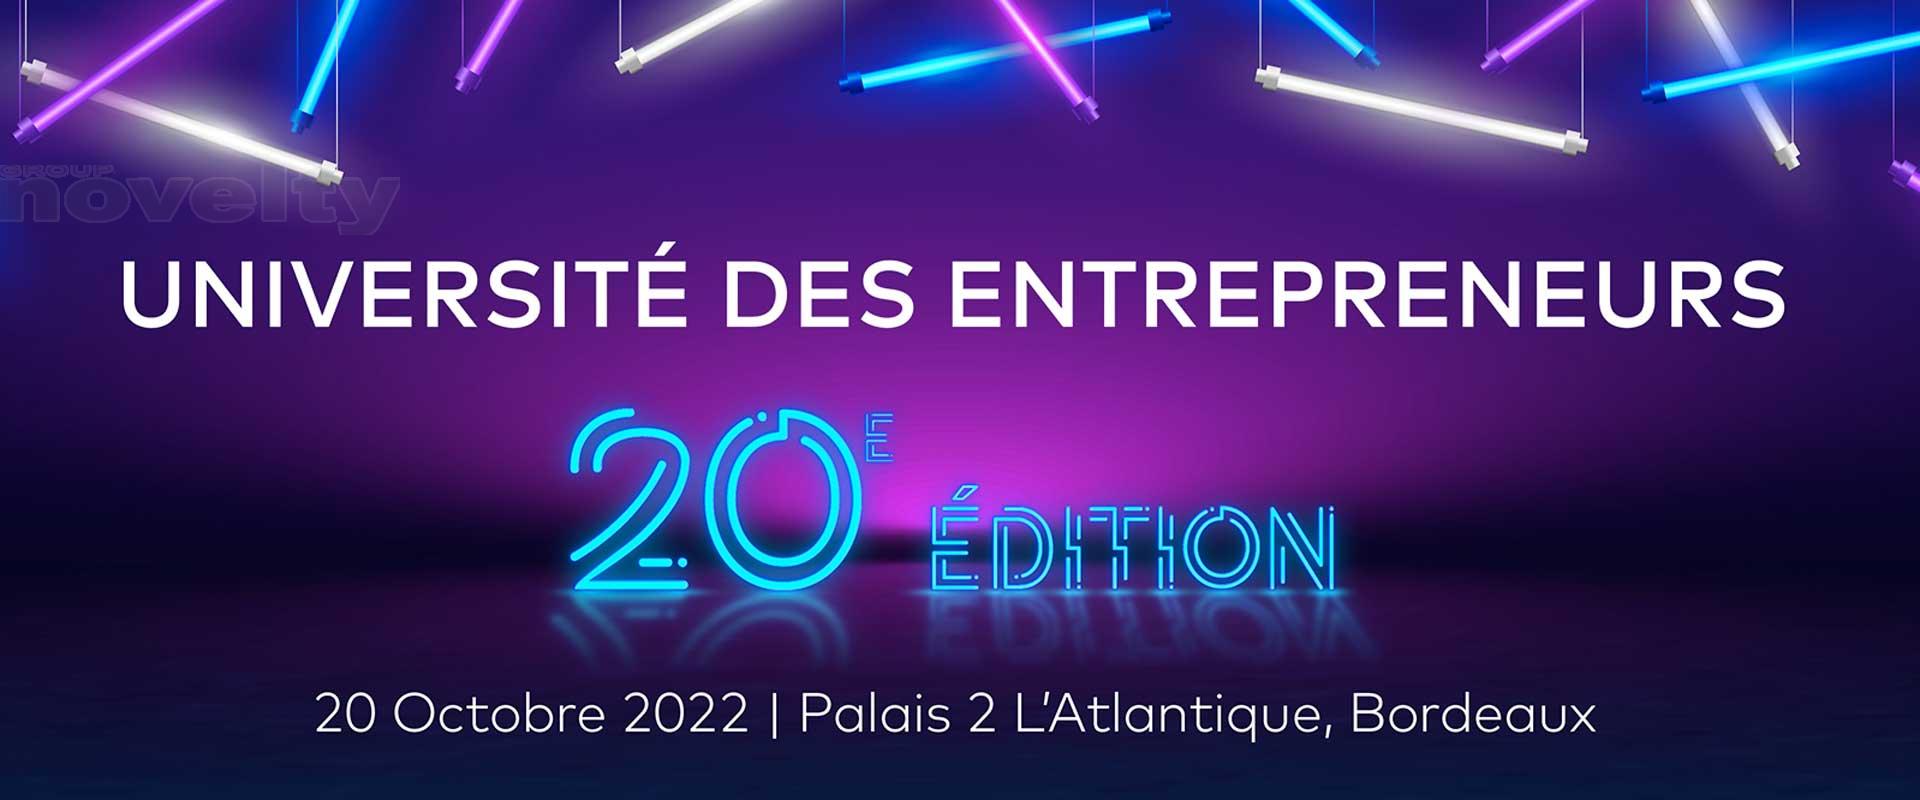 Photo 20ème édition de l\'université des entrepreneurs avec Novelty Bordeaux